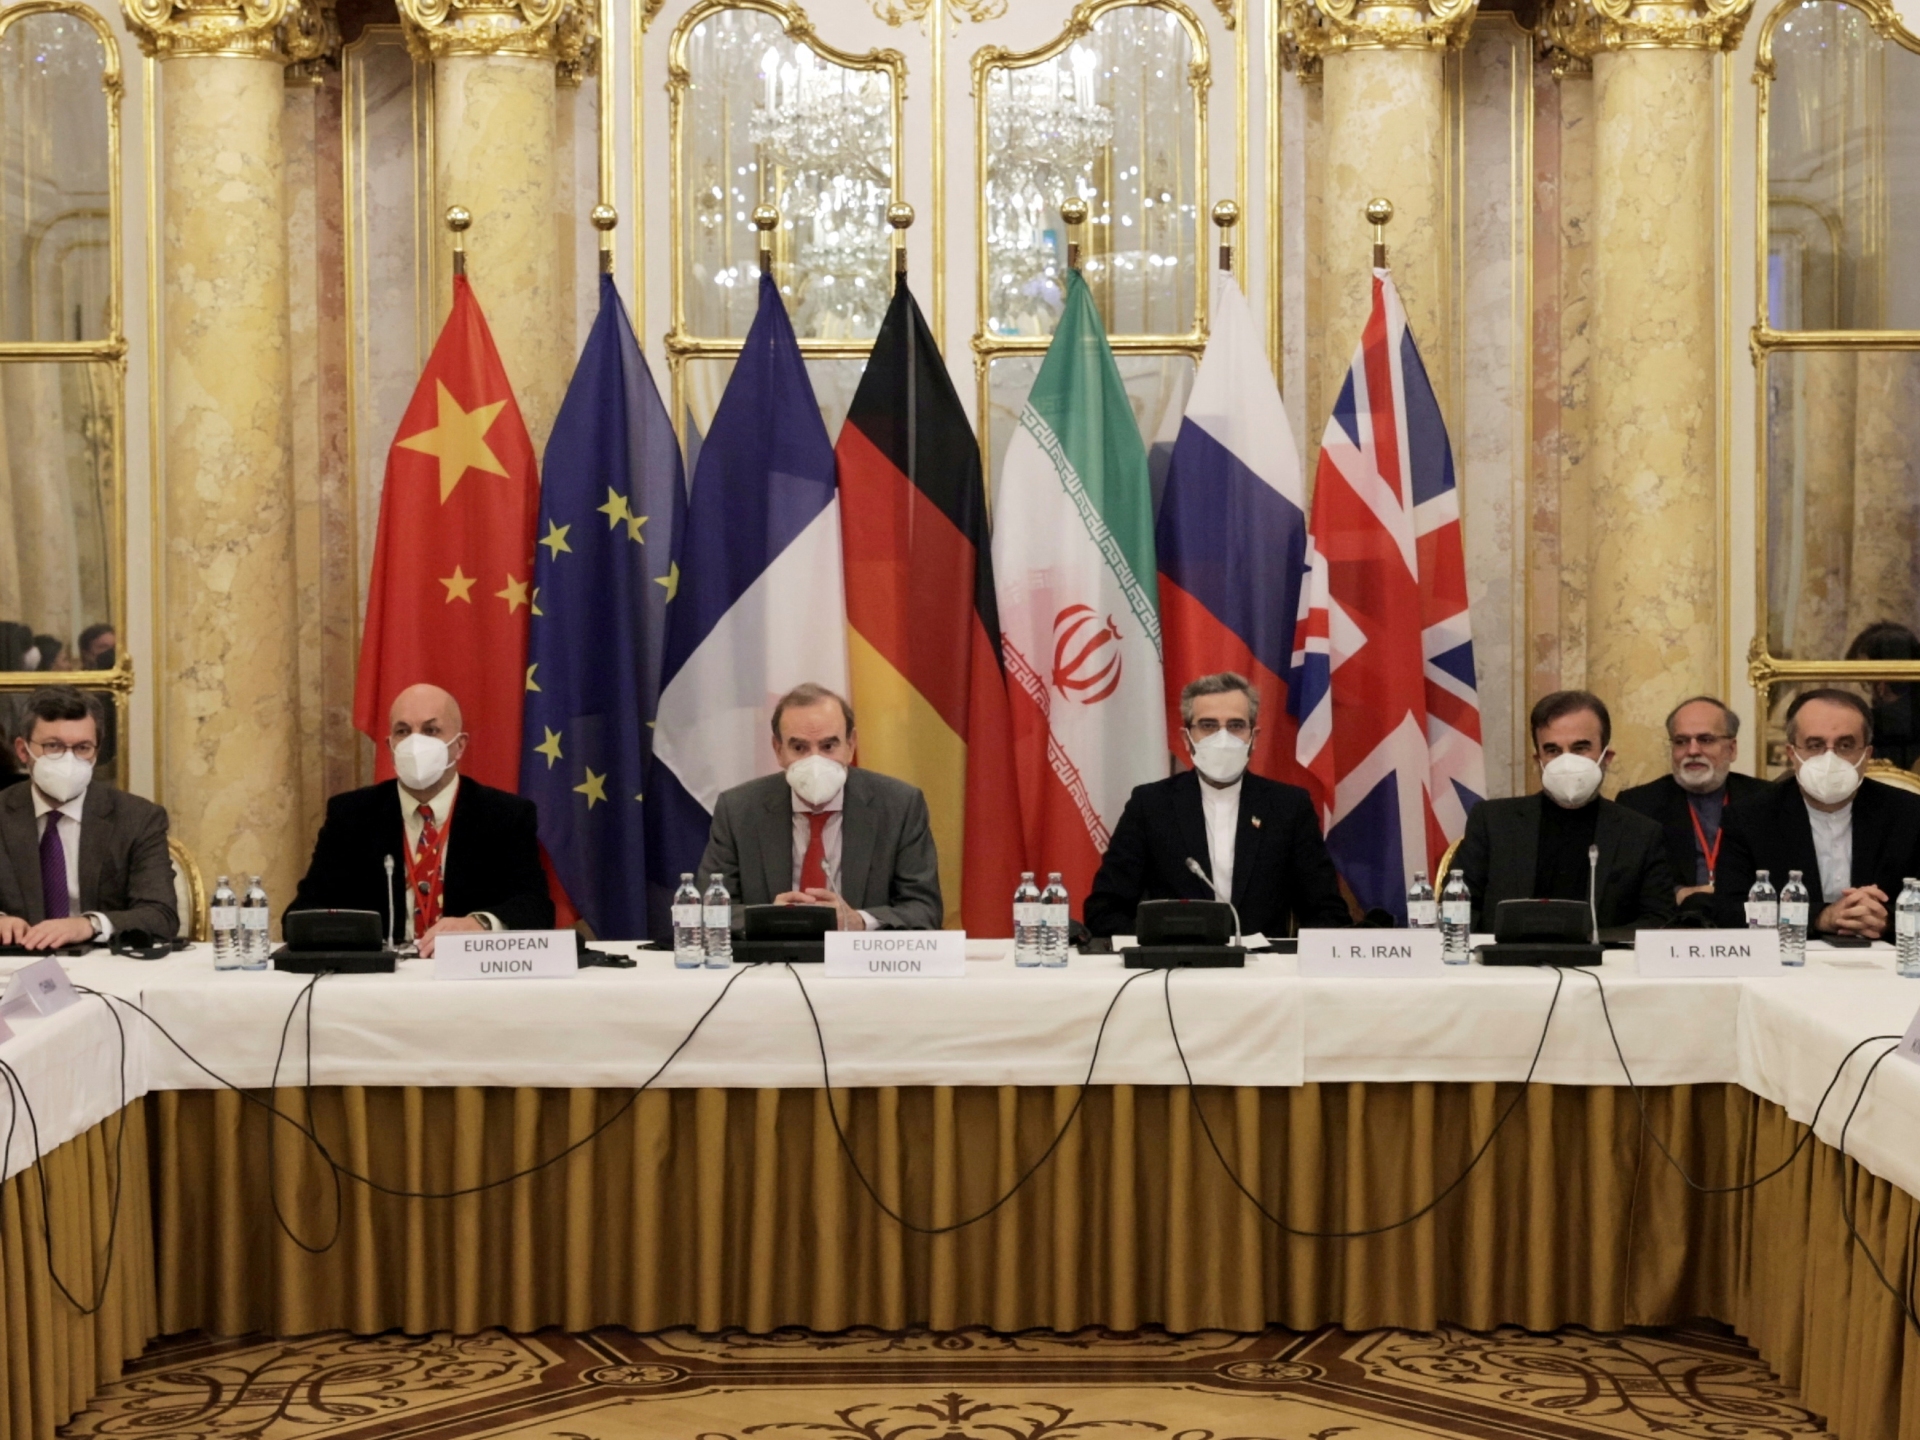 Iran nuclear deal could be near as EU circulates ‘final text’